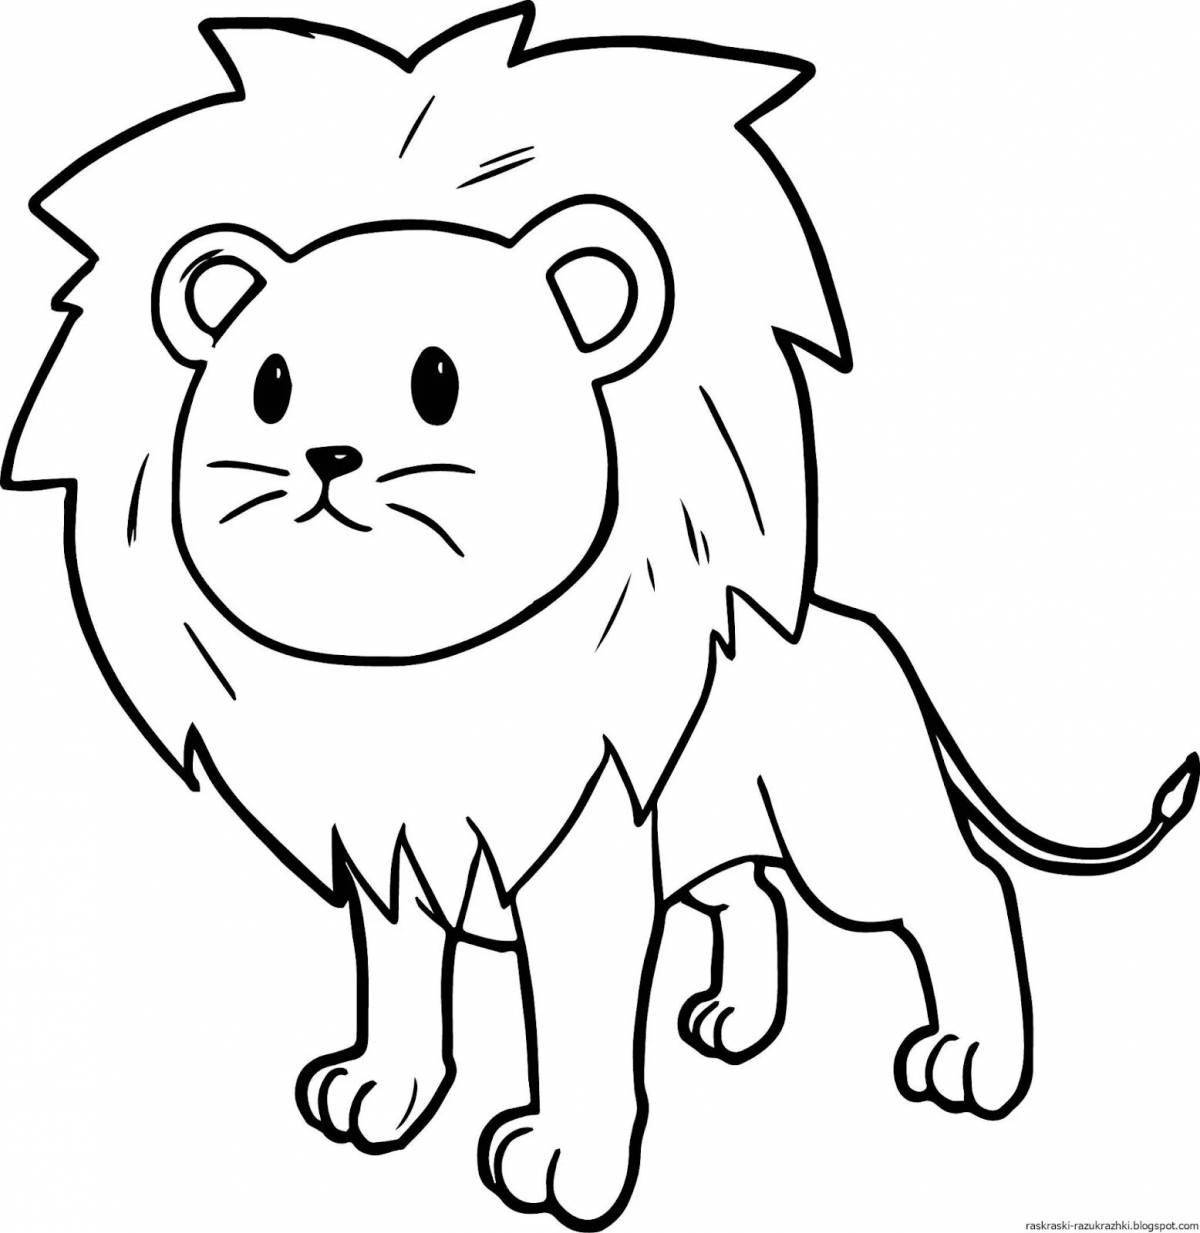 Раскраска «жирный лев» для детей 3-4 лет